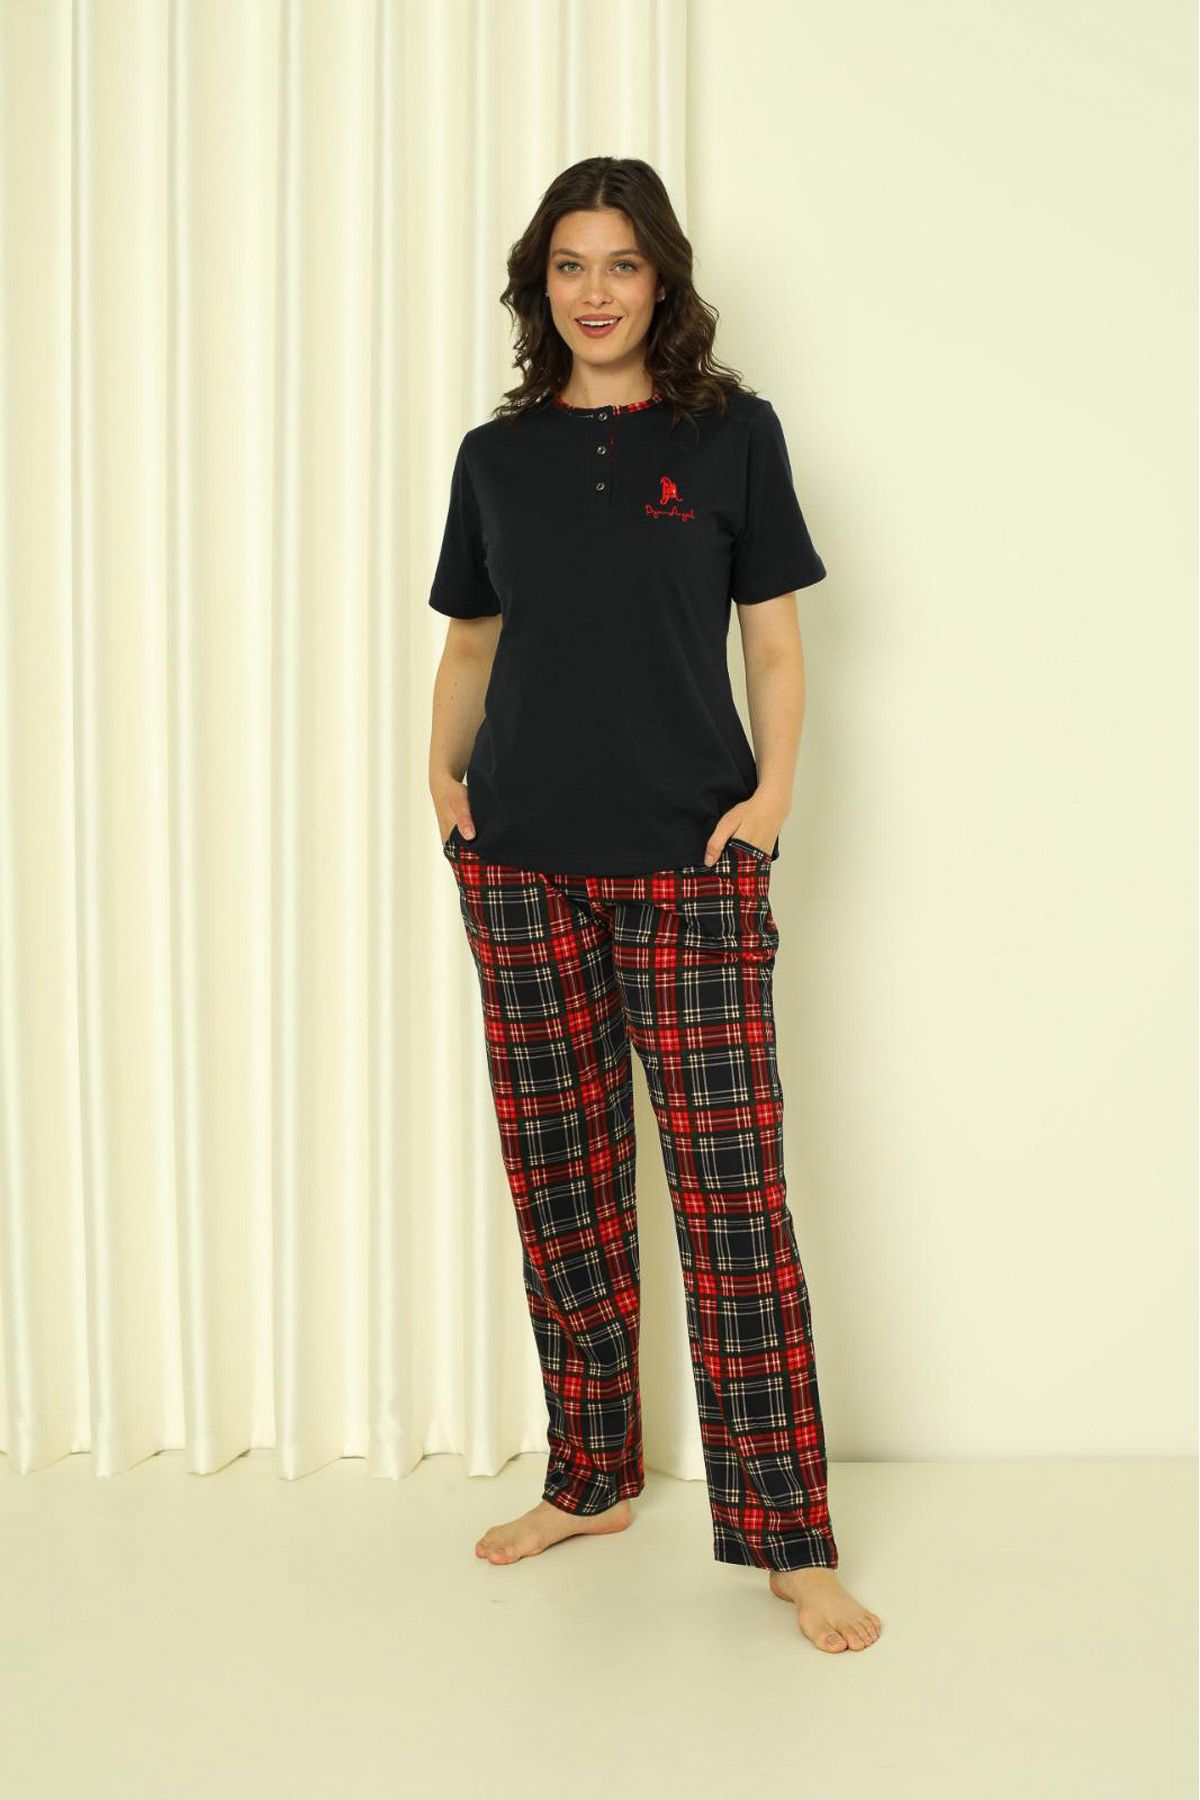 Kadın Pijama Takımı Kısa Kol Altı Küçük Ekoseli Pamuklu Mevsimlik W20312300